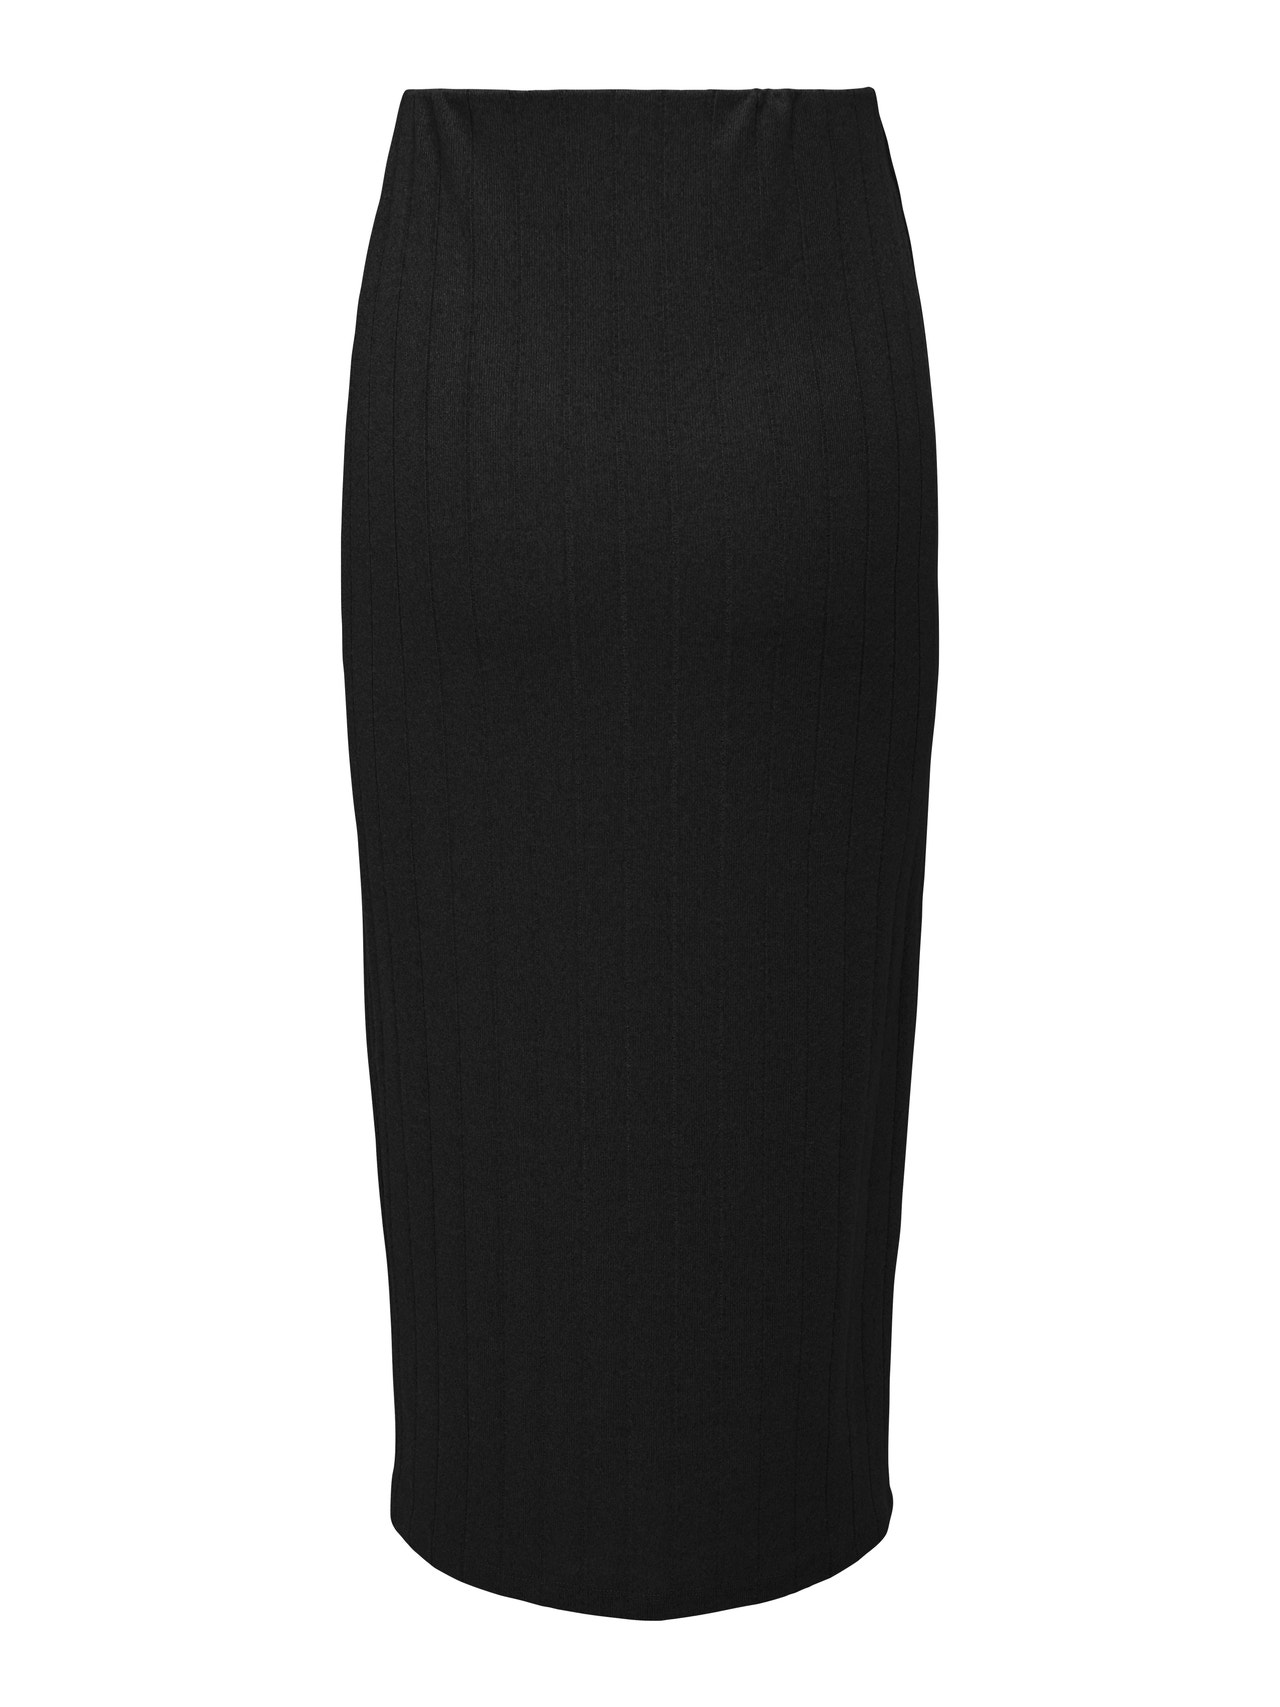 ONLY High waist Midi skirt -Black - 15317555